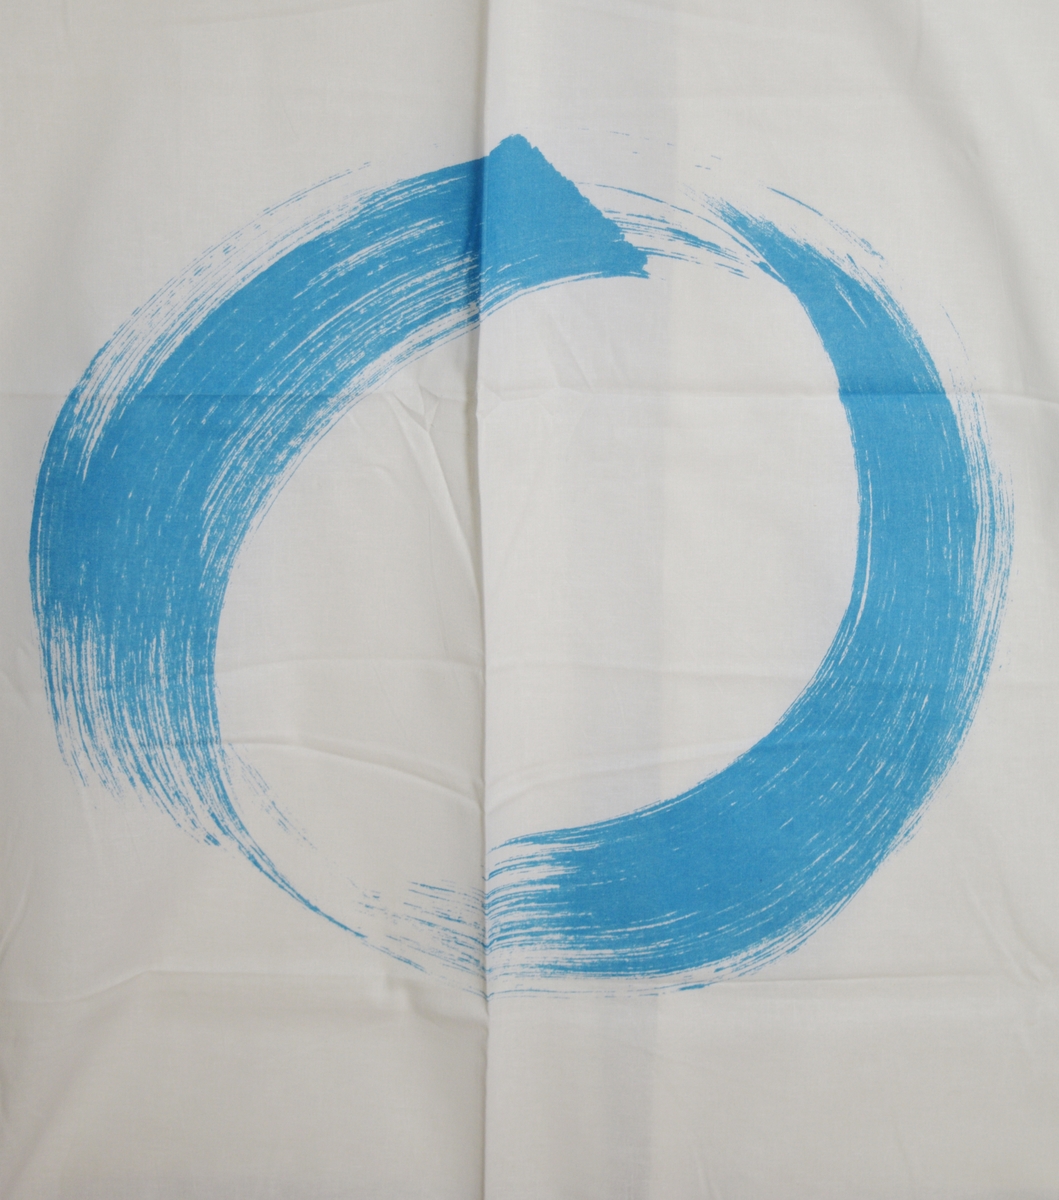 Blå store sirkler på hvit bakgrunn. Trykket imiterer at sirklene er malt på med bred pensel eller malerkost.